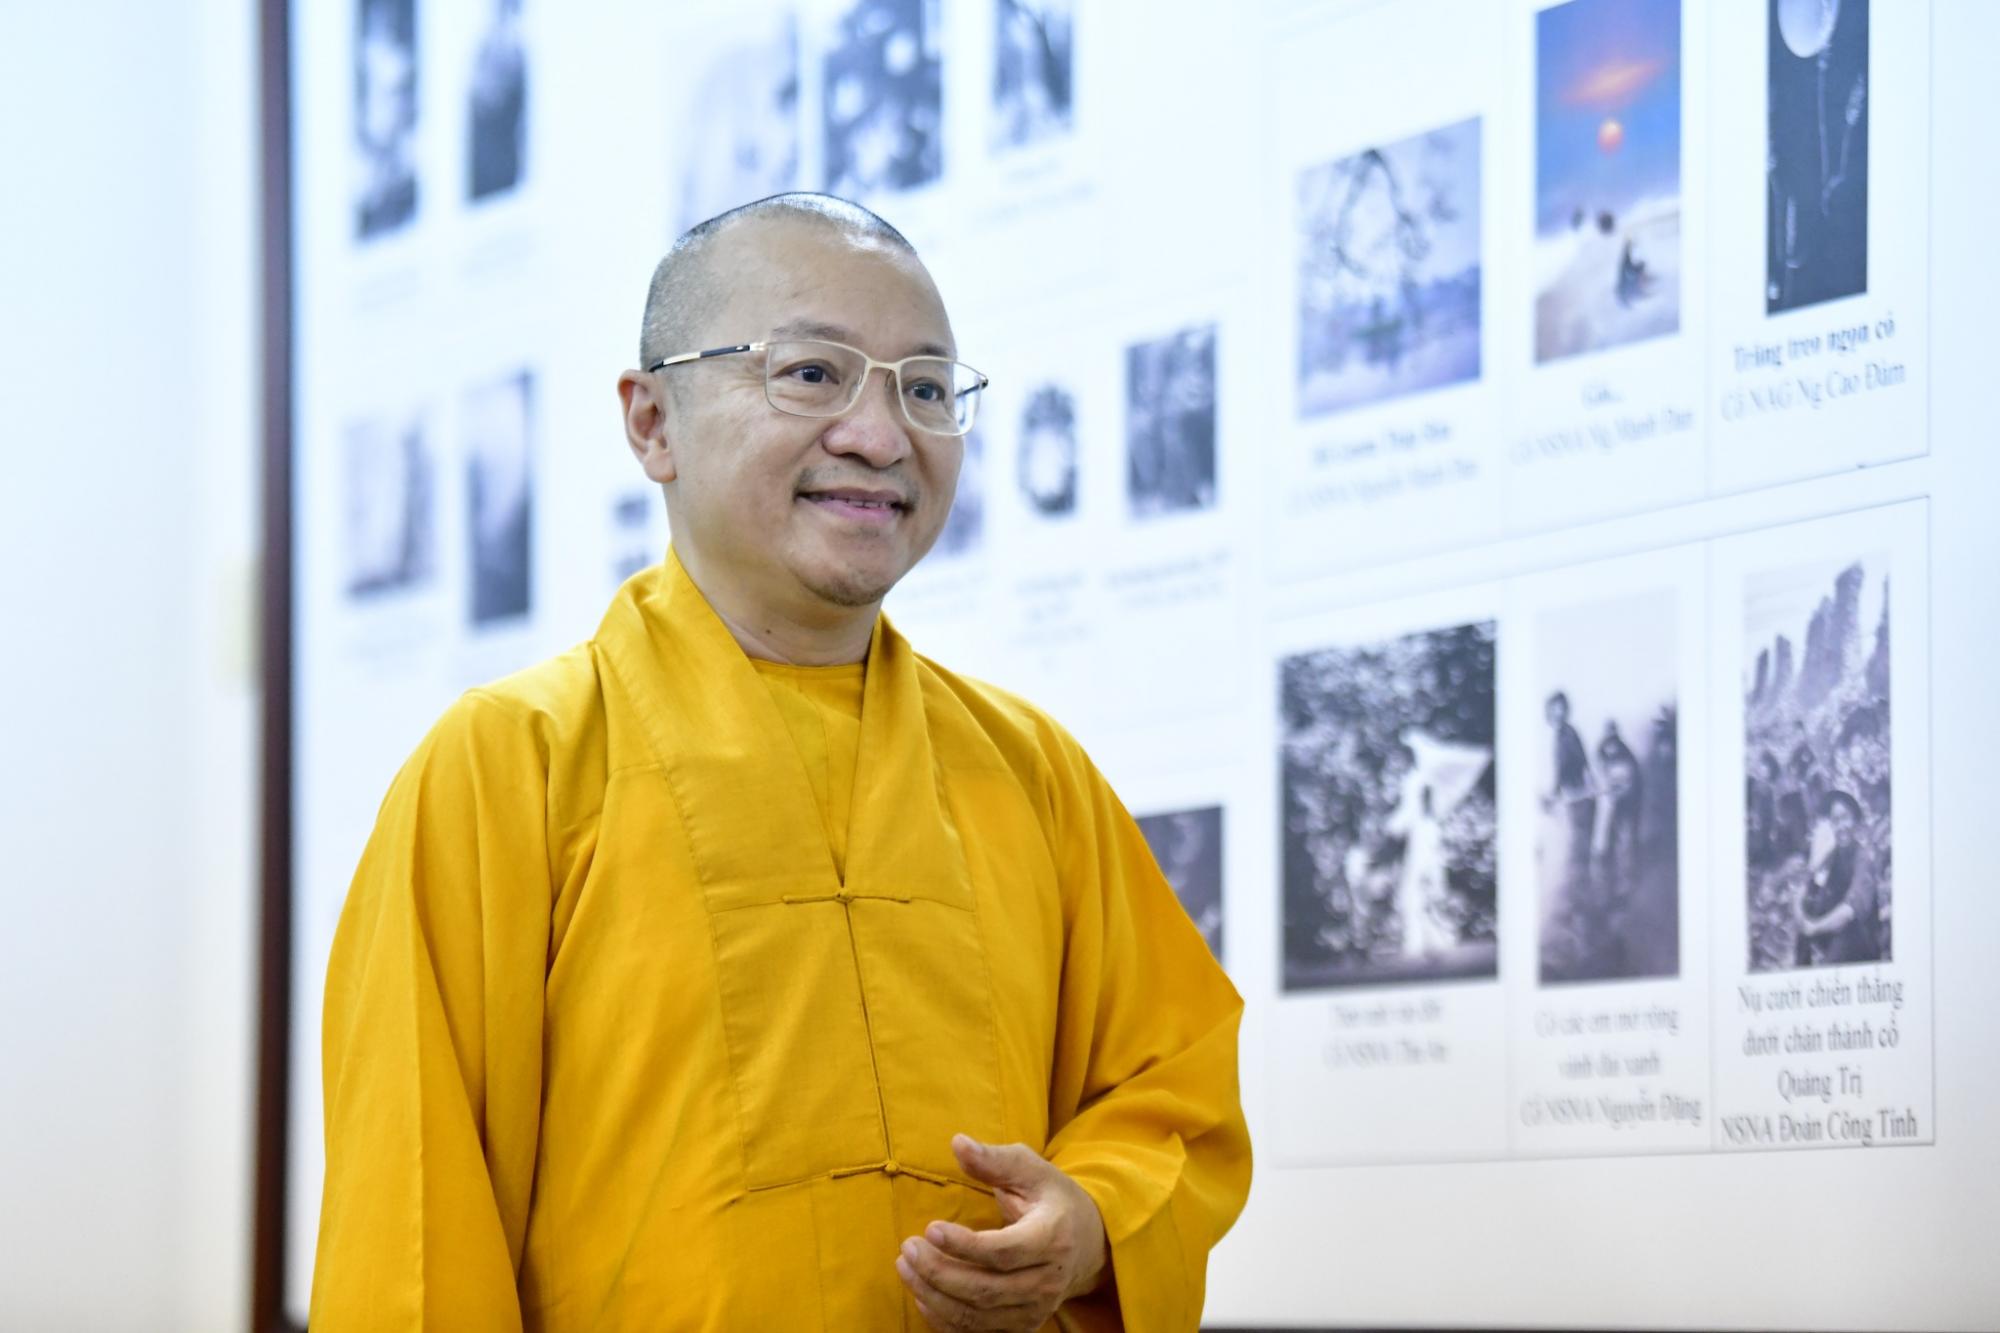 Họp báo "Thông báo kết quả Cuộc thi Ảnh nghệ thuật: Phật giáo đồng hành cùng Dân tộc"